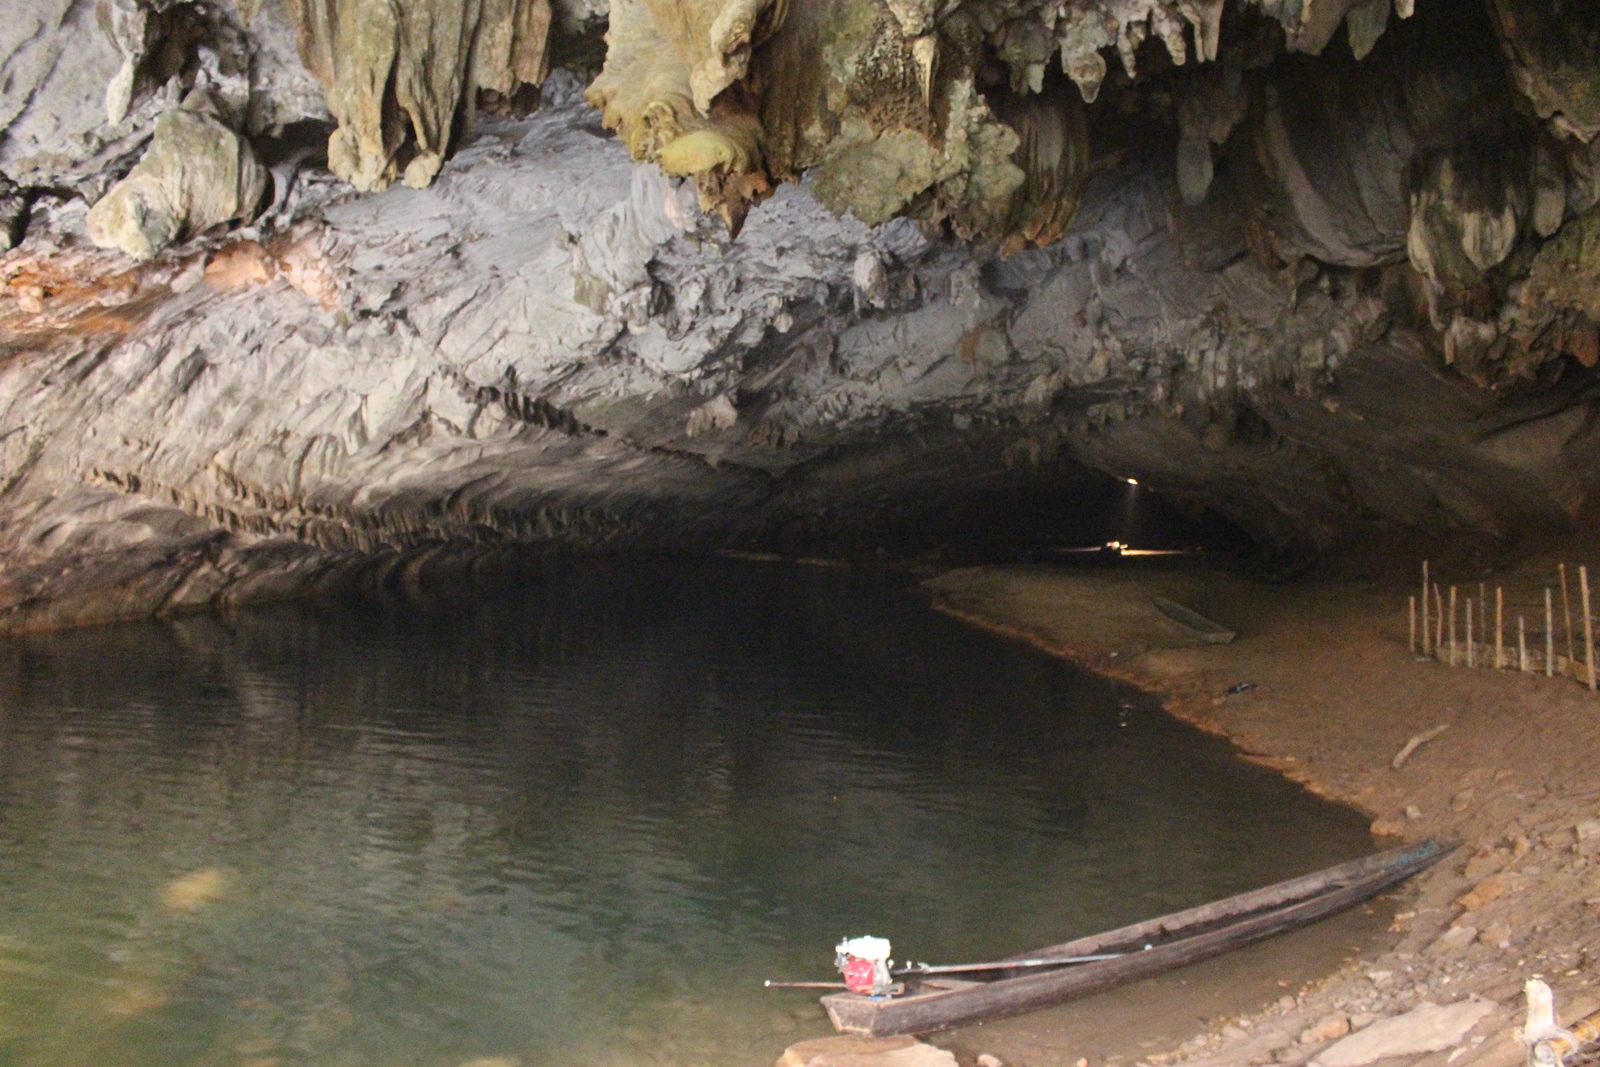 Kong Lor Cave Laos